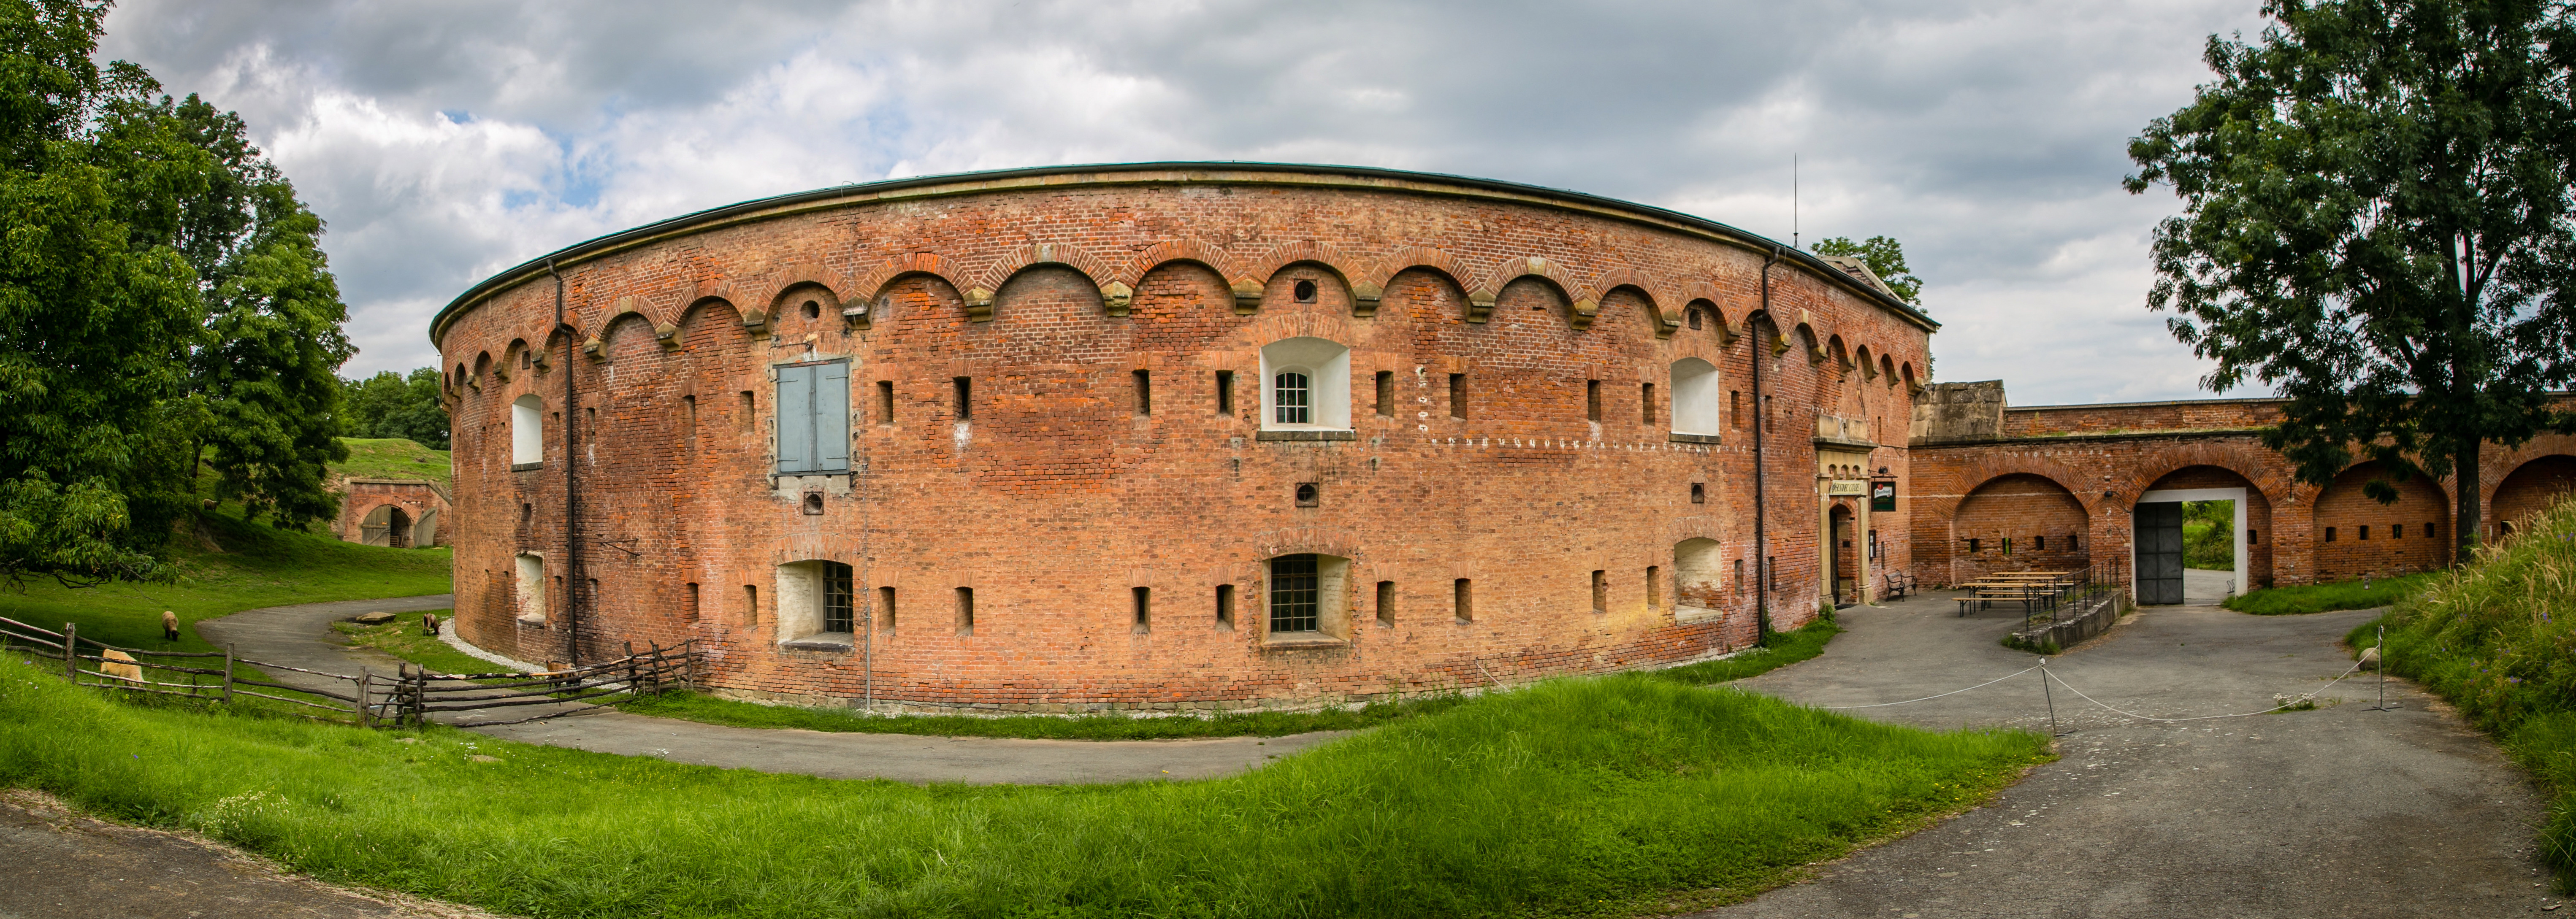 Czechy Olomouc Fort XVII Krelov 5